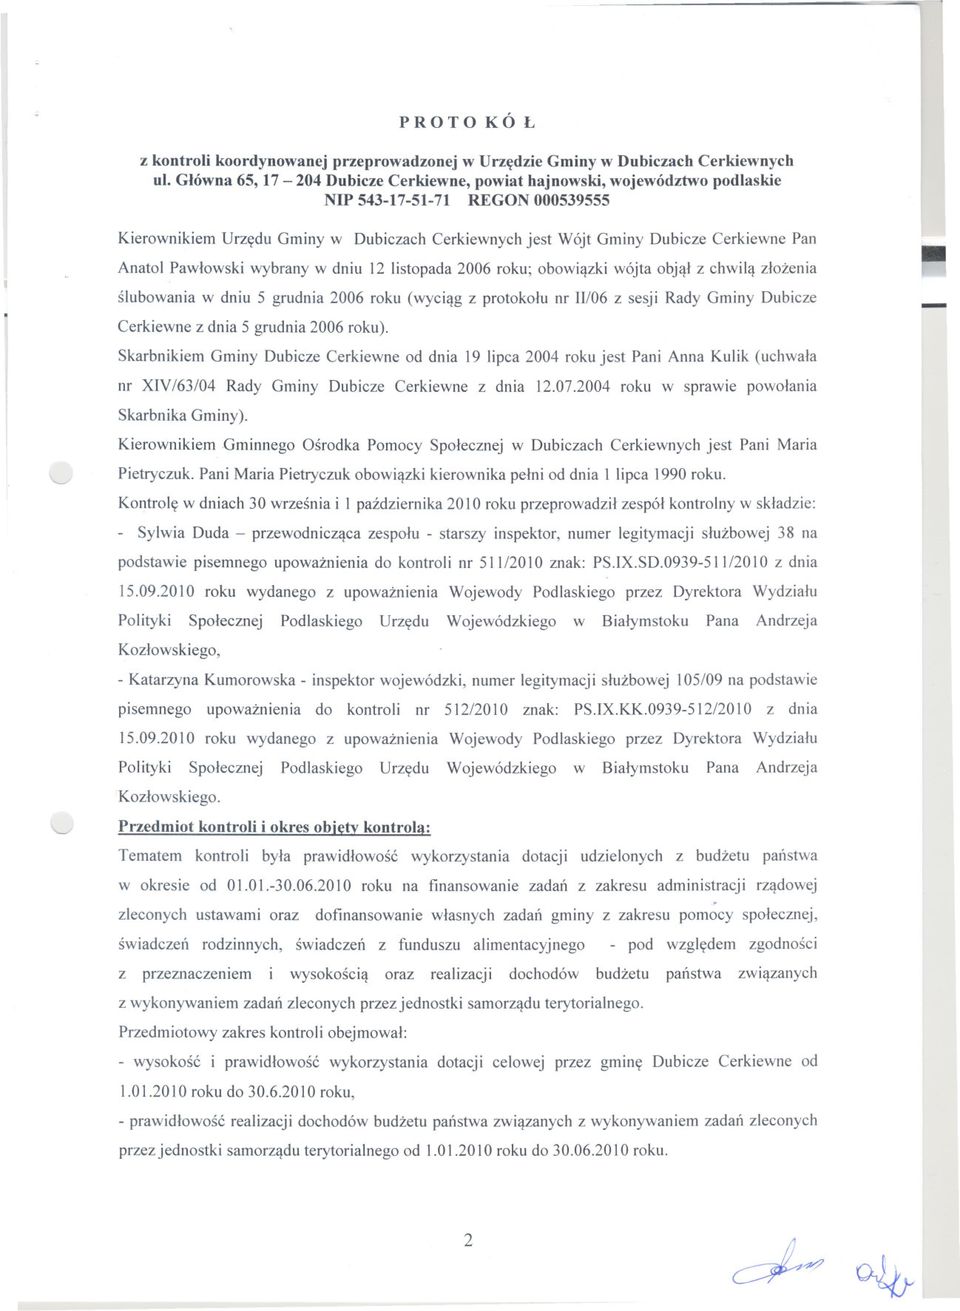 Anatol Pawlowski wybrany w dniu 12 listopada 2006 roku; obowiazki wójta objal z chwila zlozenia slubowania w dniu 5 grudnia 2006 roku (wyciag z protokolu nr 11I06z sesji Rady Gminy Dubicze Cerkiewne